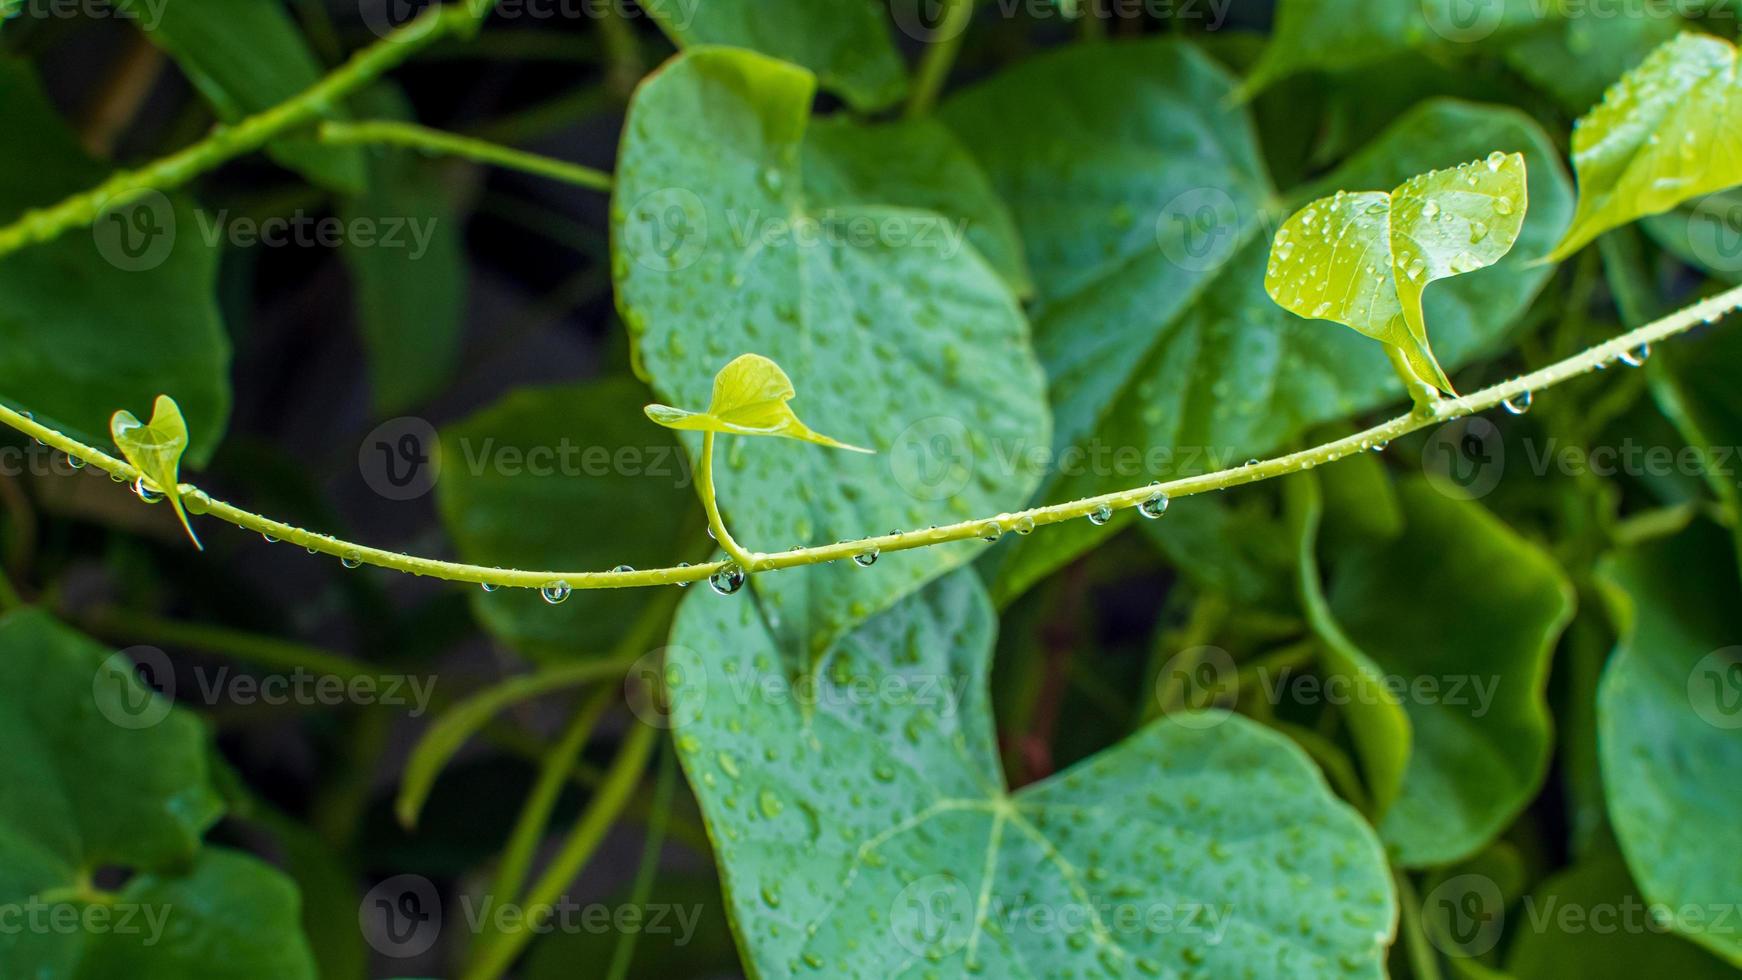 tinospora cordifolia nome local guduchi e giloy, é uma trepadeira herbácea da família menispermaceae nativa das áreas tropicais da índia uso como medicina ayurveda foto